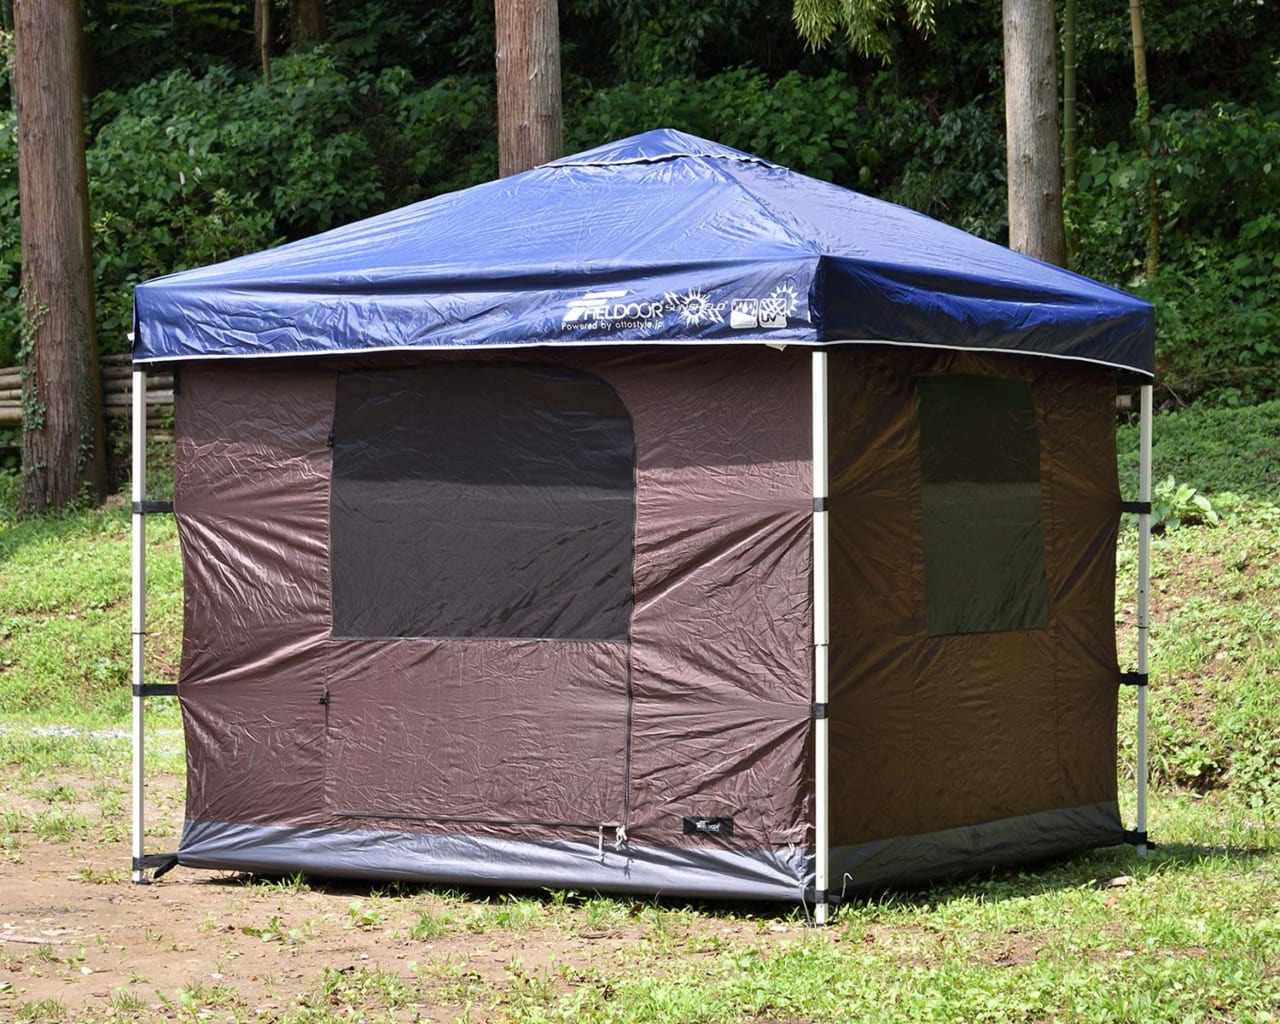 昼間はタープで自然を感じ 夜はテントで就寝 両使いできるタープテント用インナーテントが新登場 Camplog Gear